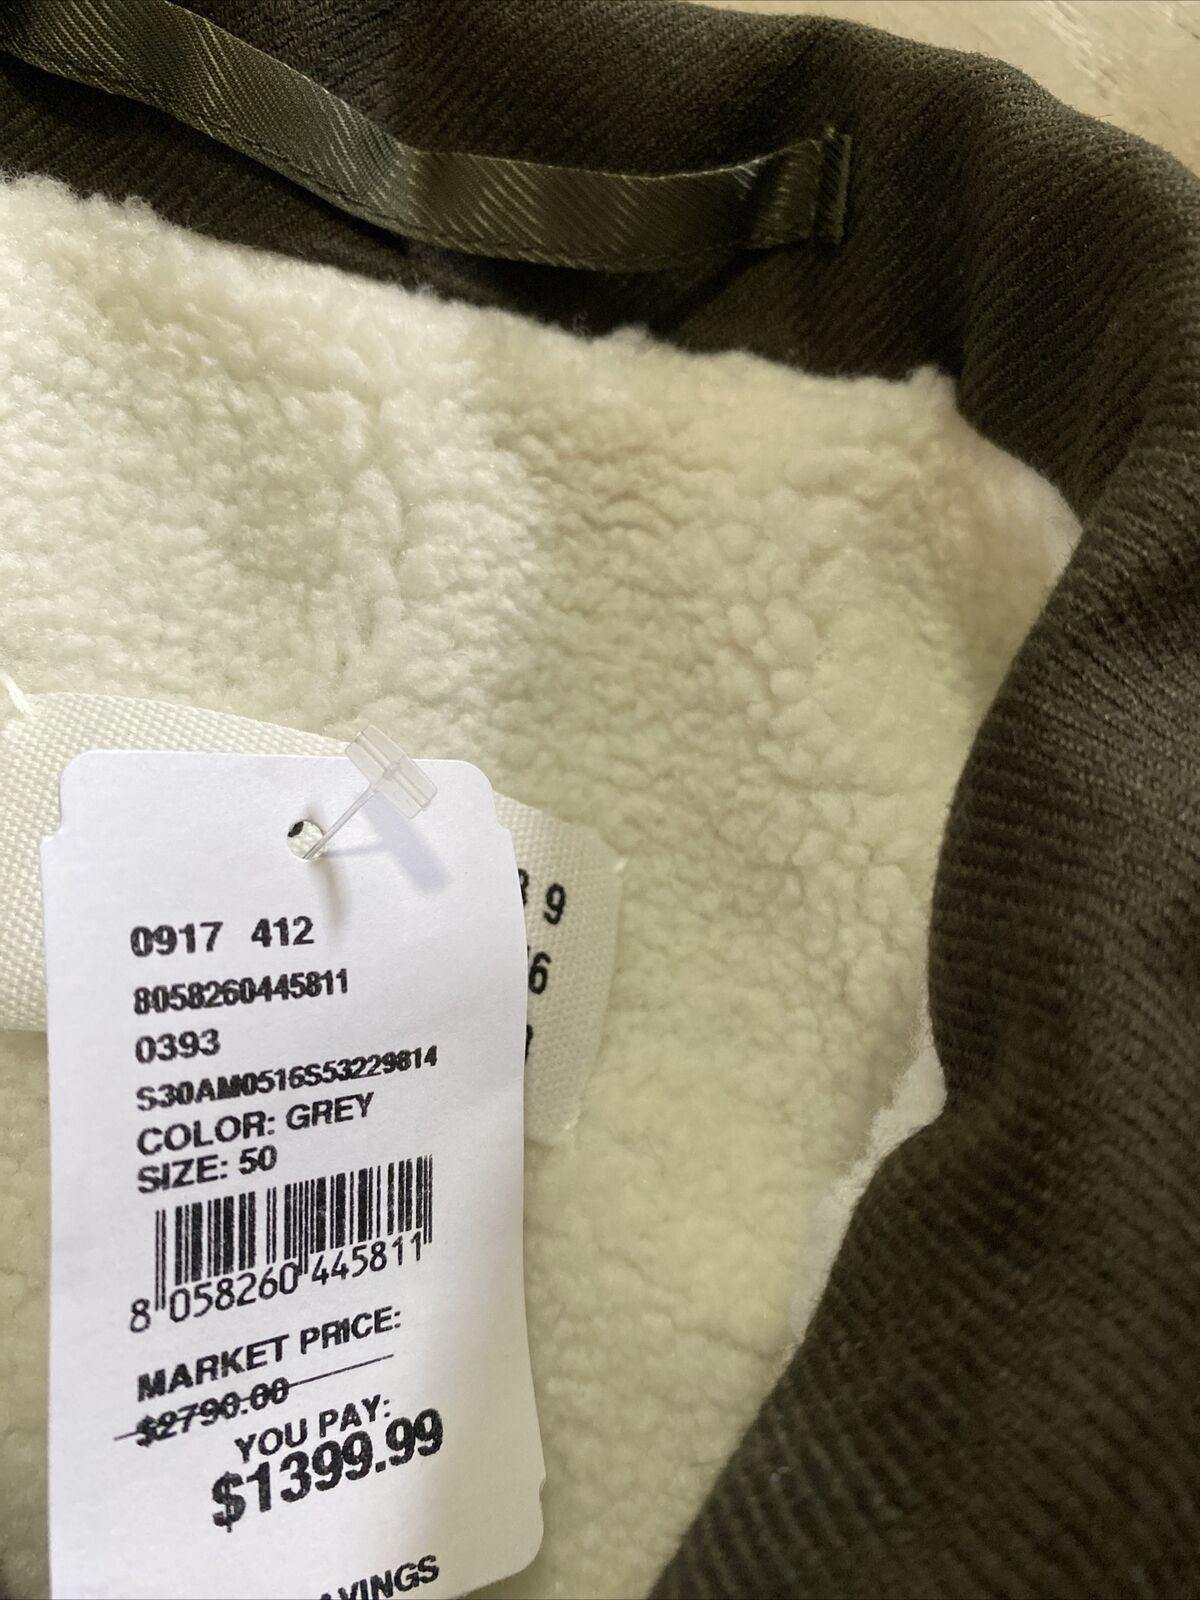 Новая куртка на подкладке из искусственного меха Maison Margiela Kaban, $2790, оливково-зеленый цвет 40/50 Ita